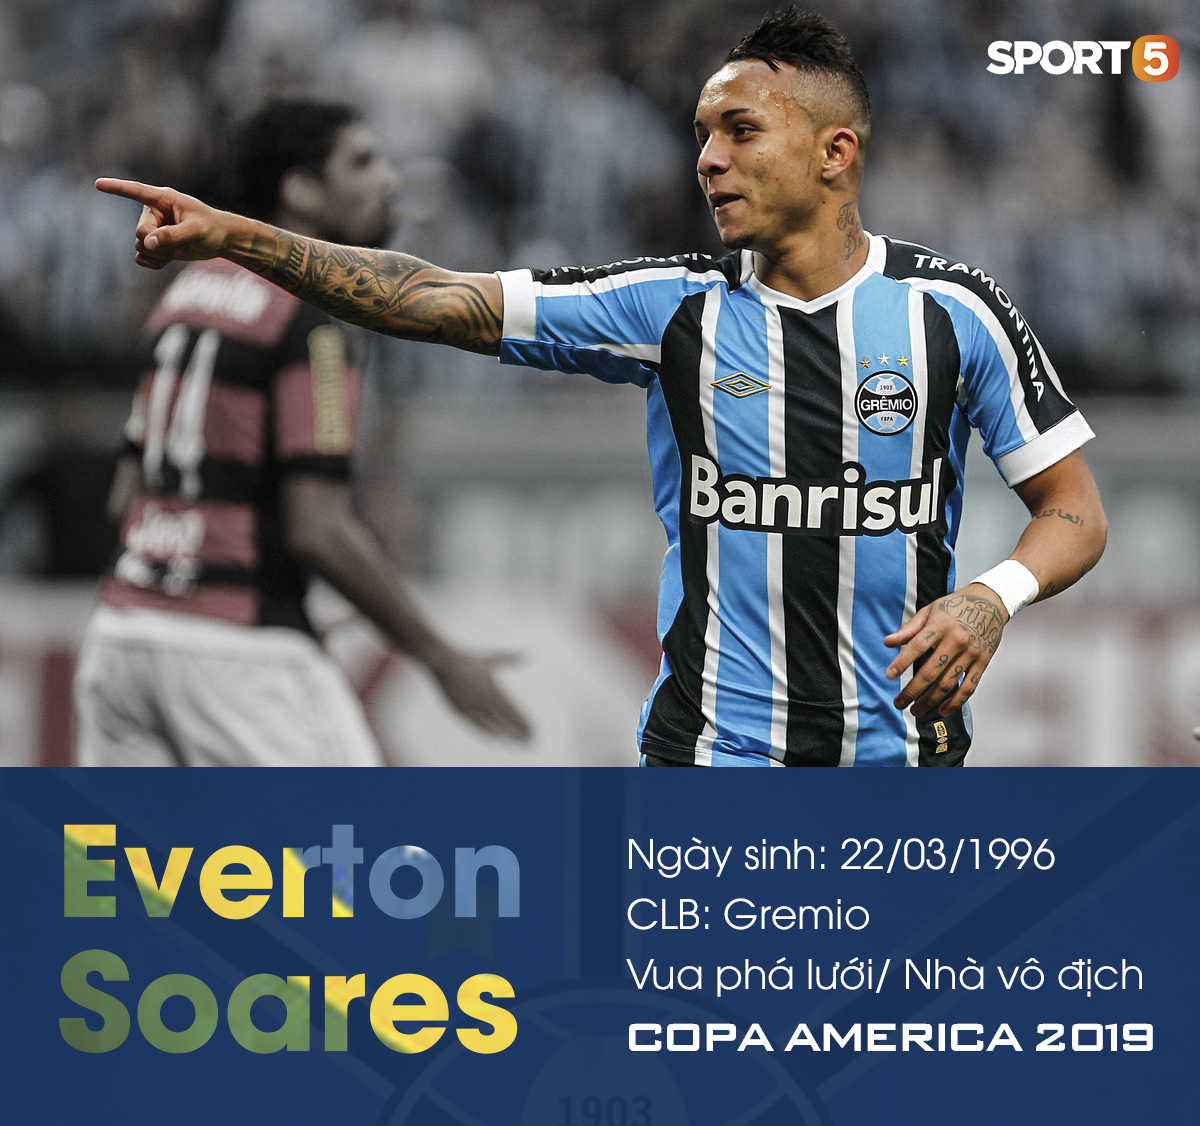 Chuyện lúc 0h: Người hùng của Brazil, Everton Soares - gã soái ca kỳ dị, quay lưng với tiền bạc và danh tiếng để chọn tình yêu - Ảnh 1.